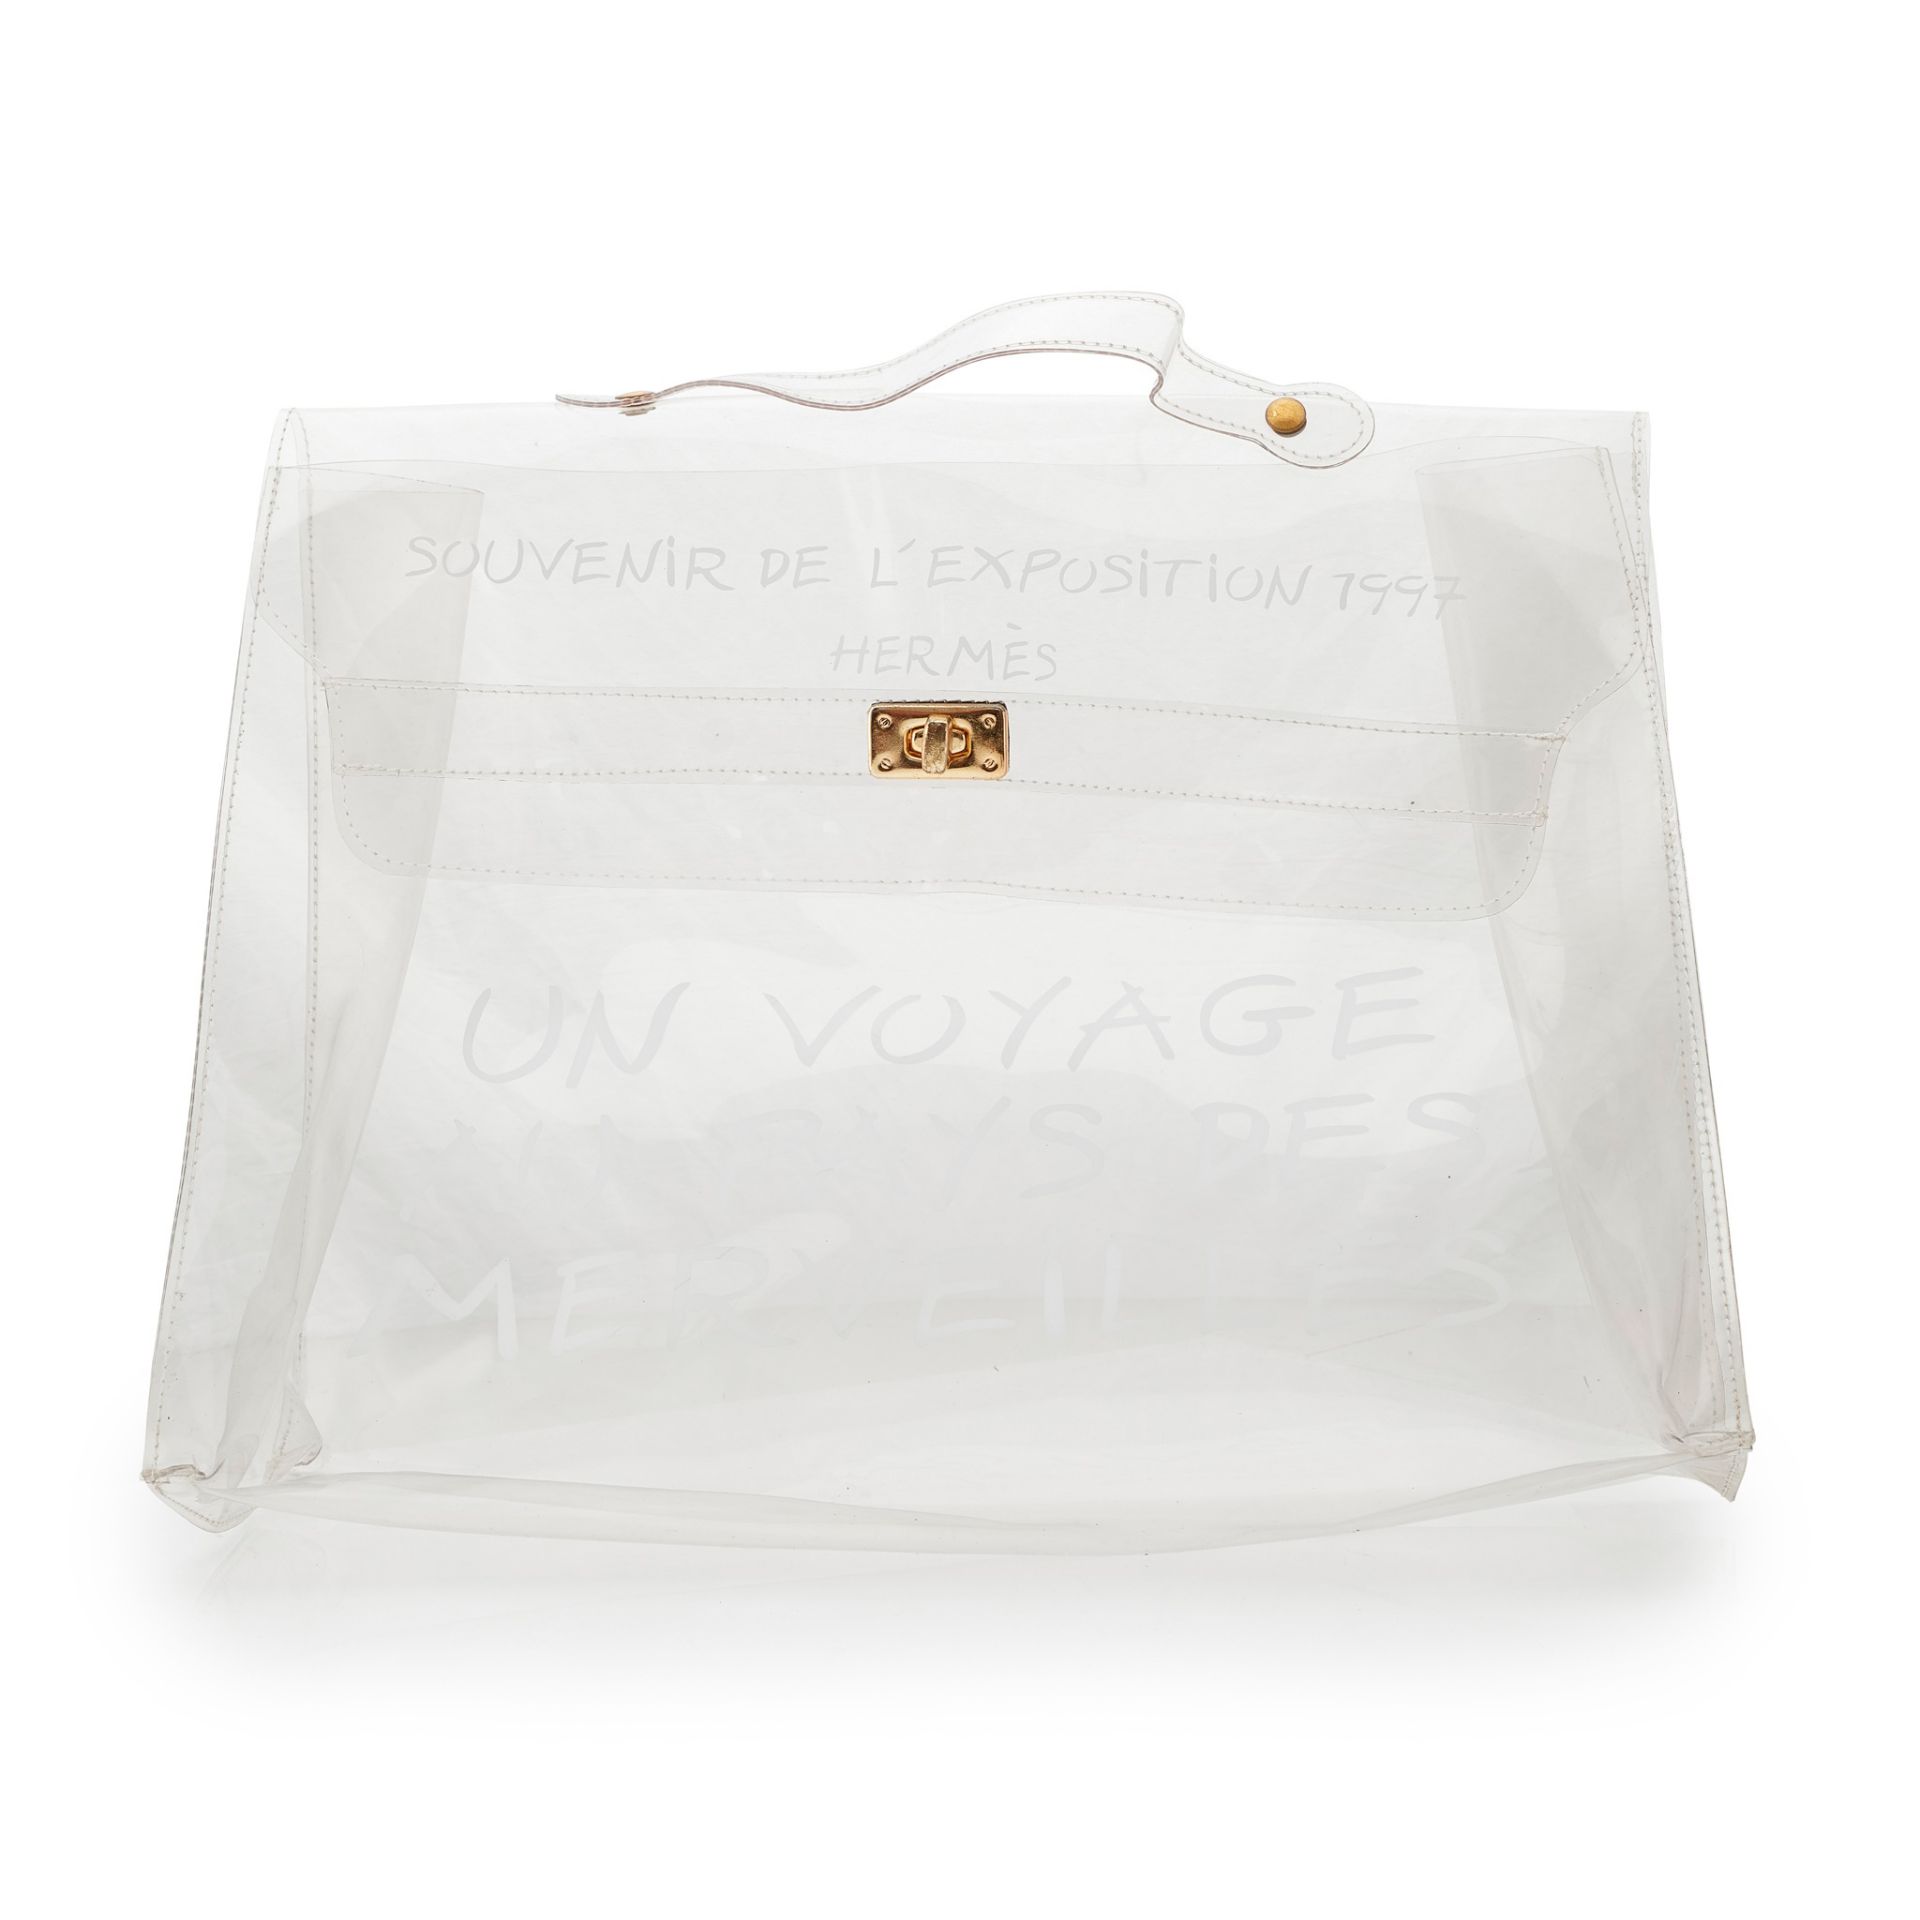 A 'Kelly Souvenir' handbag, Hermès